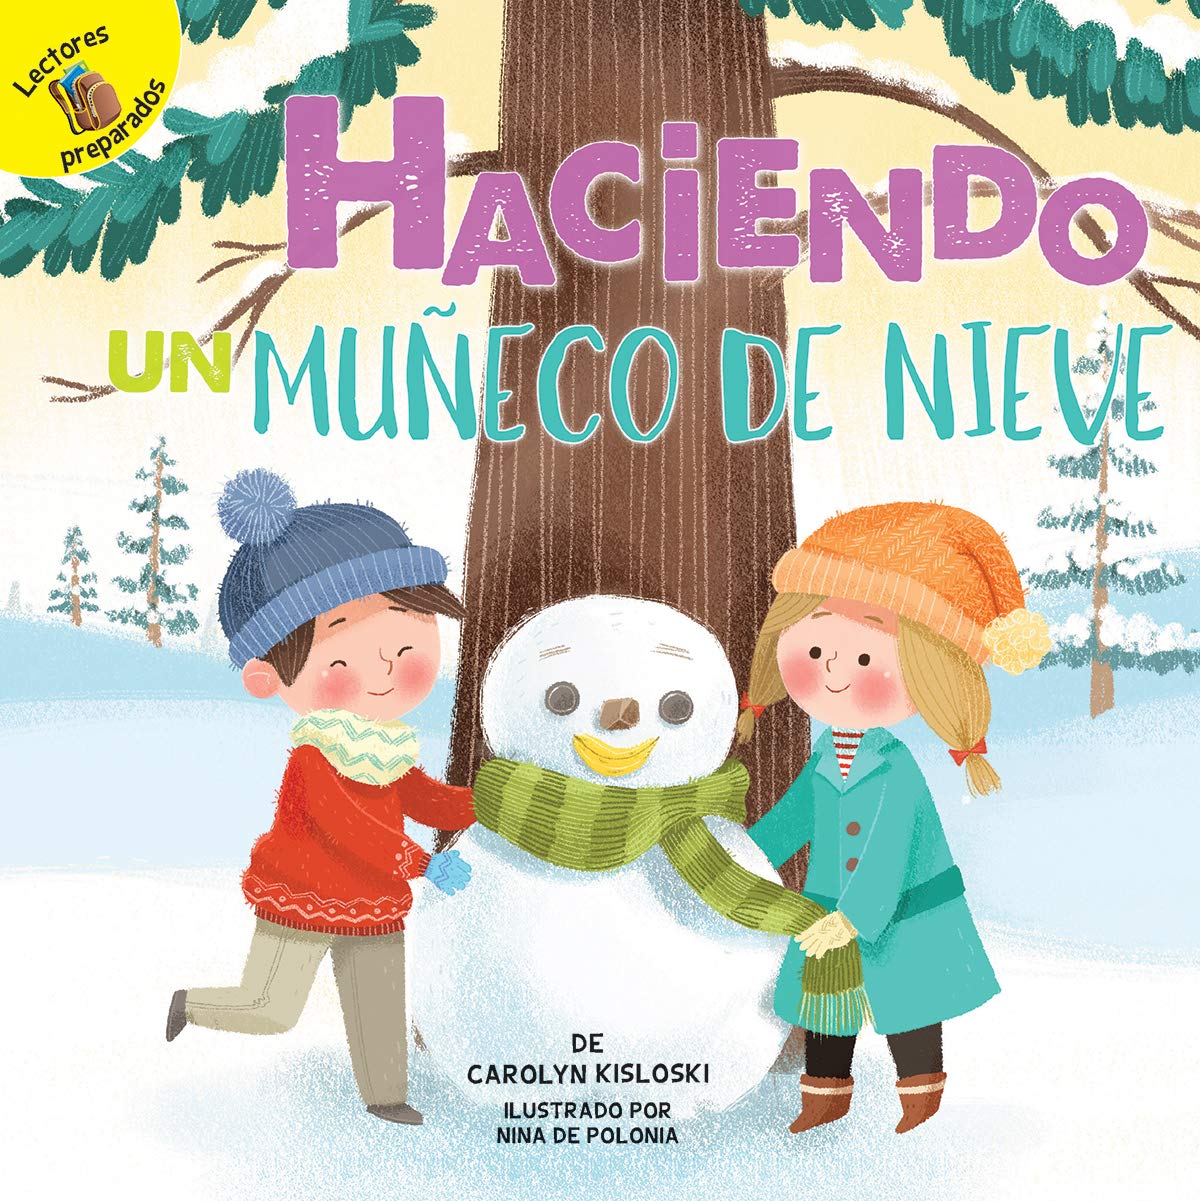 Haciendo un muñeco de nieve: Building a Snowman (Play Time) (Spanish Edition)